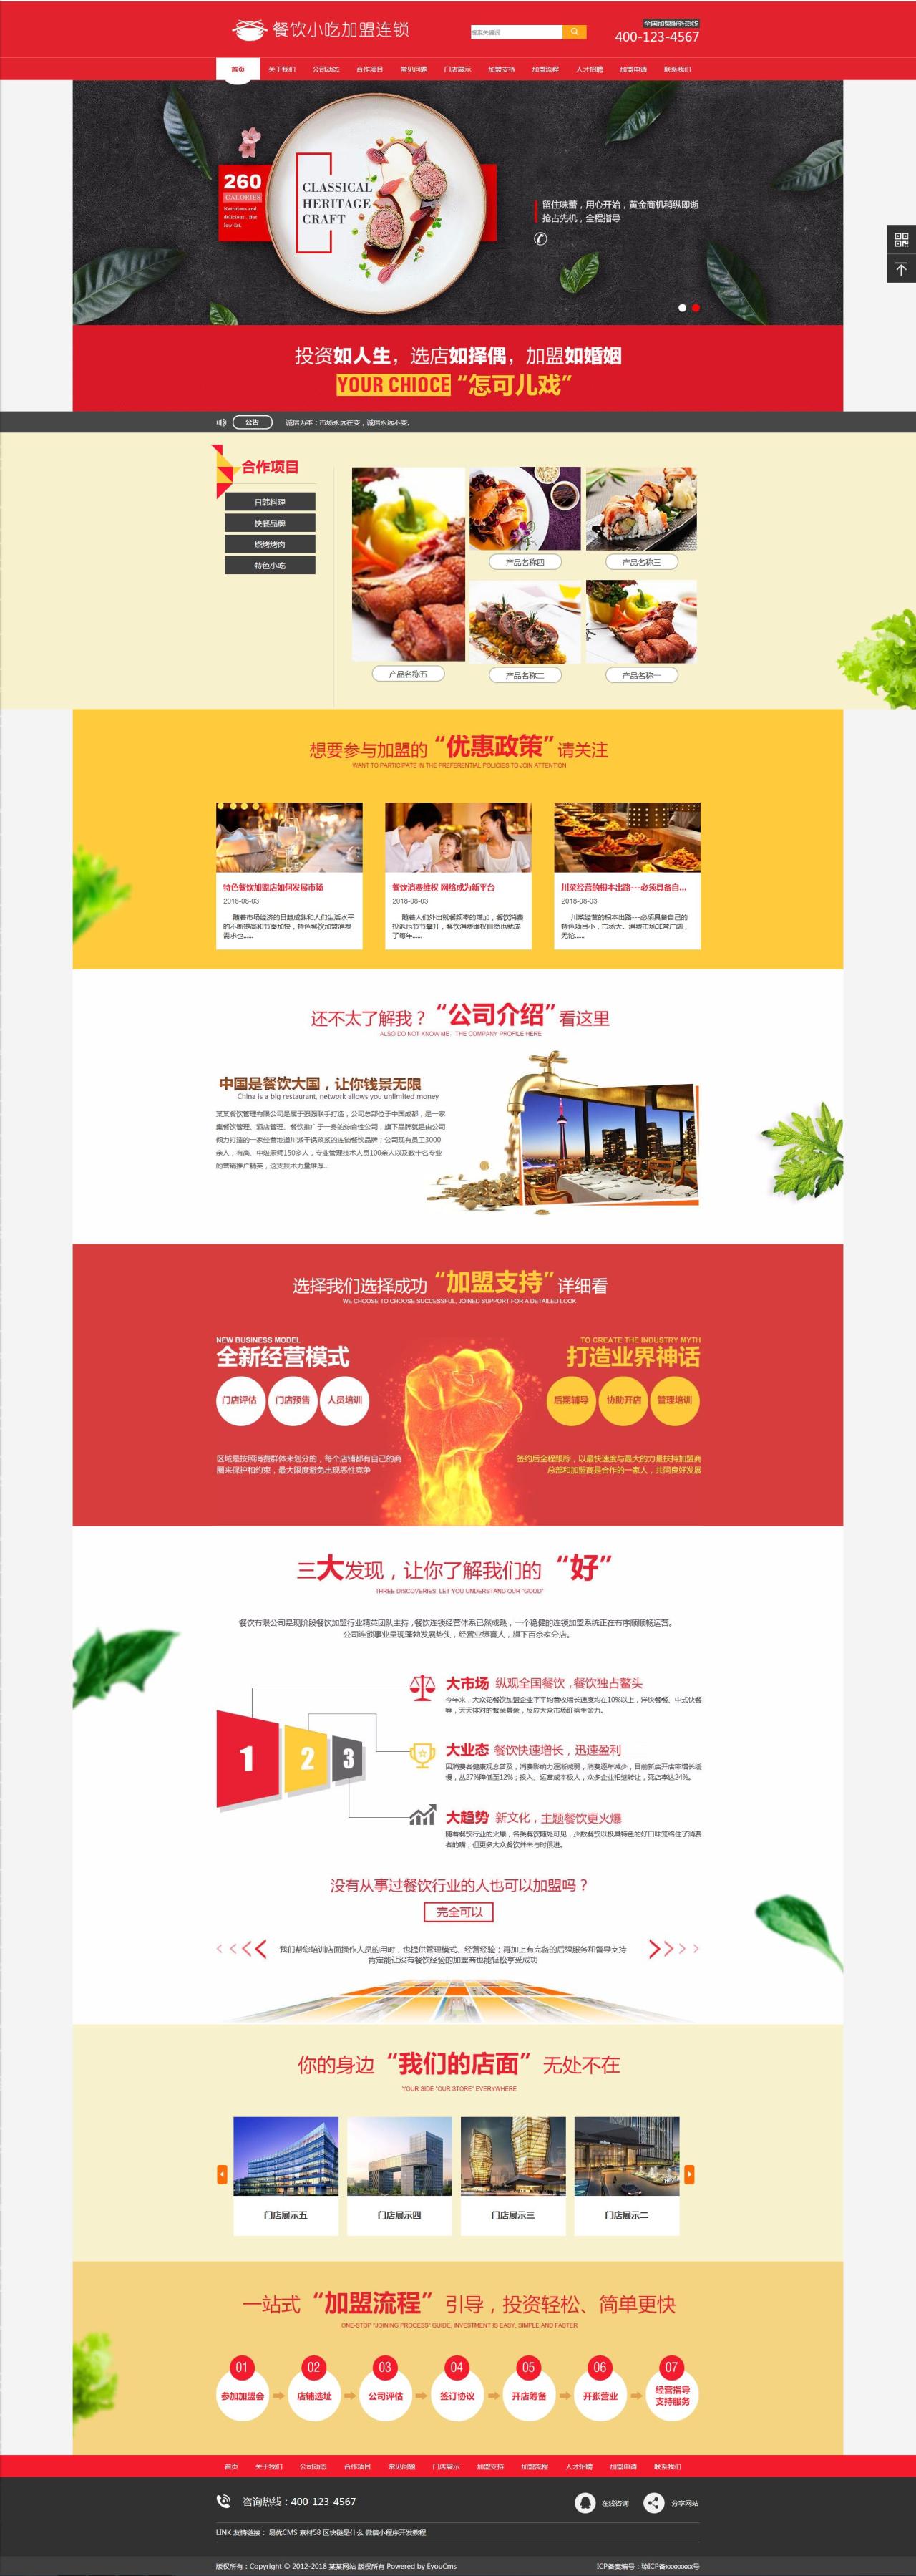 易优cms红色大气餐饮小吃加盟连锁企业网站模板源码【站长亲测】